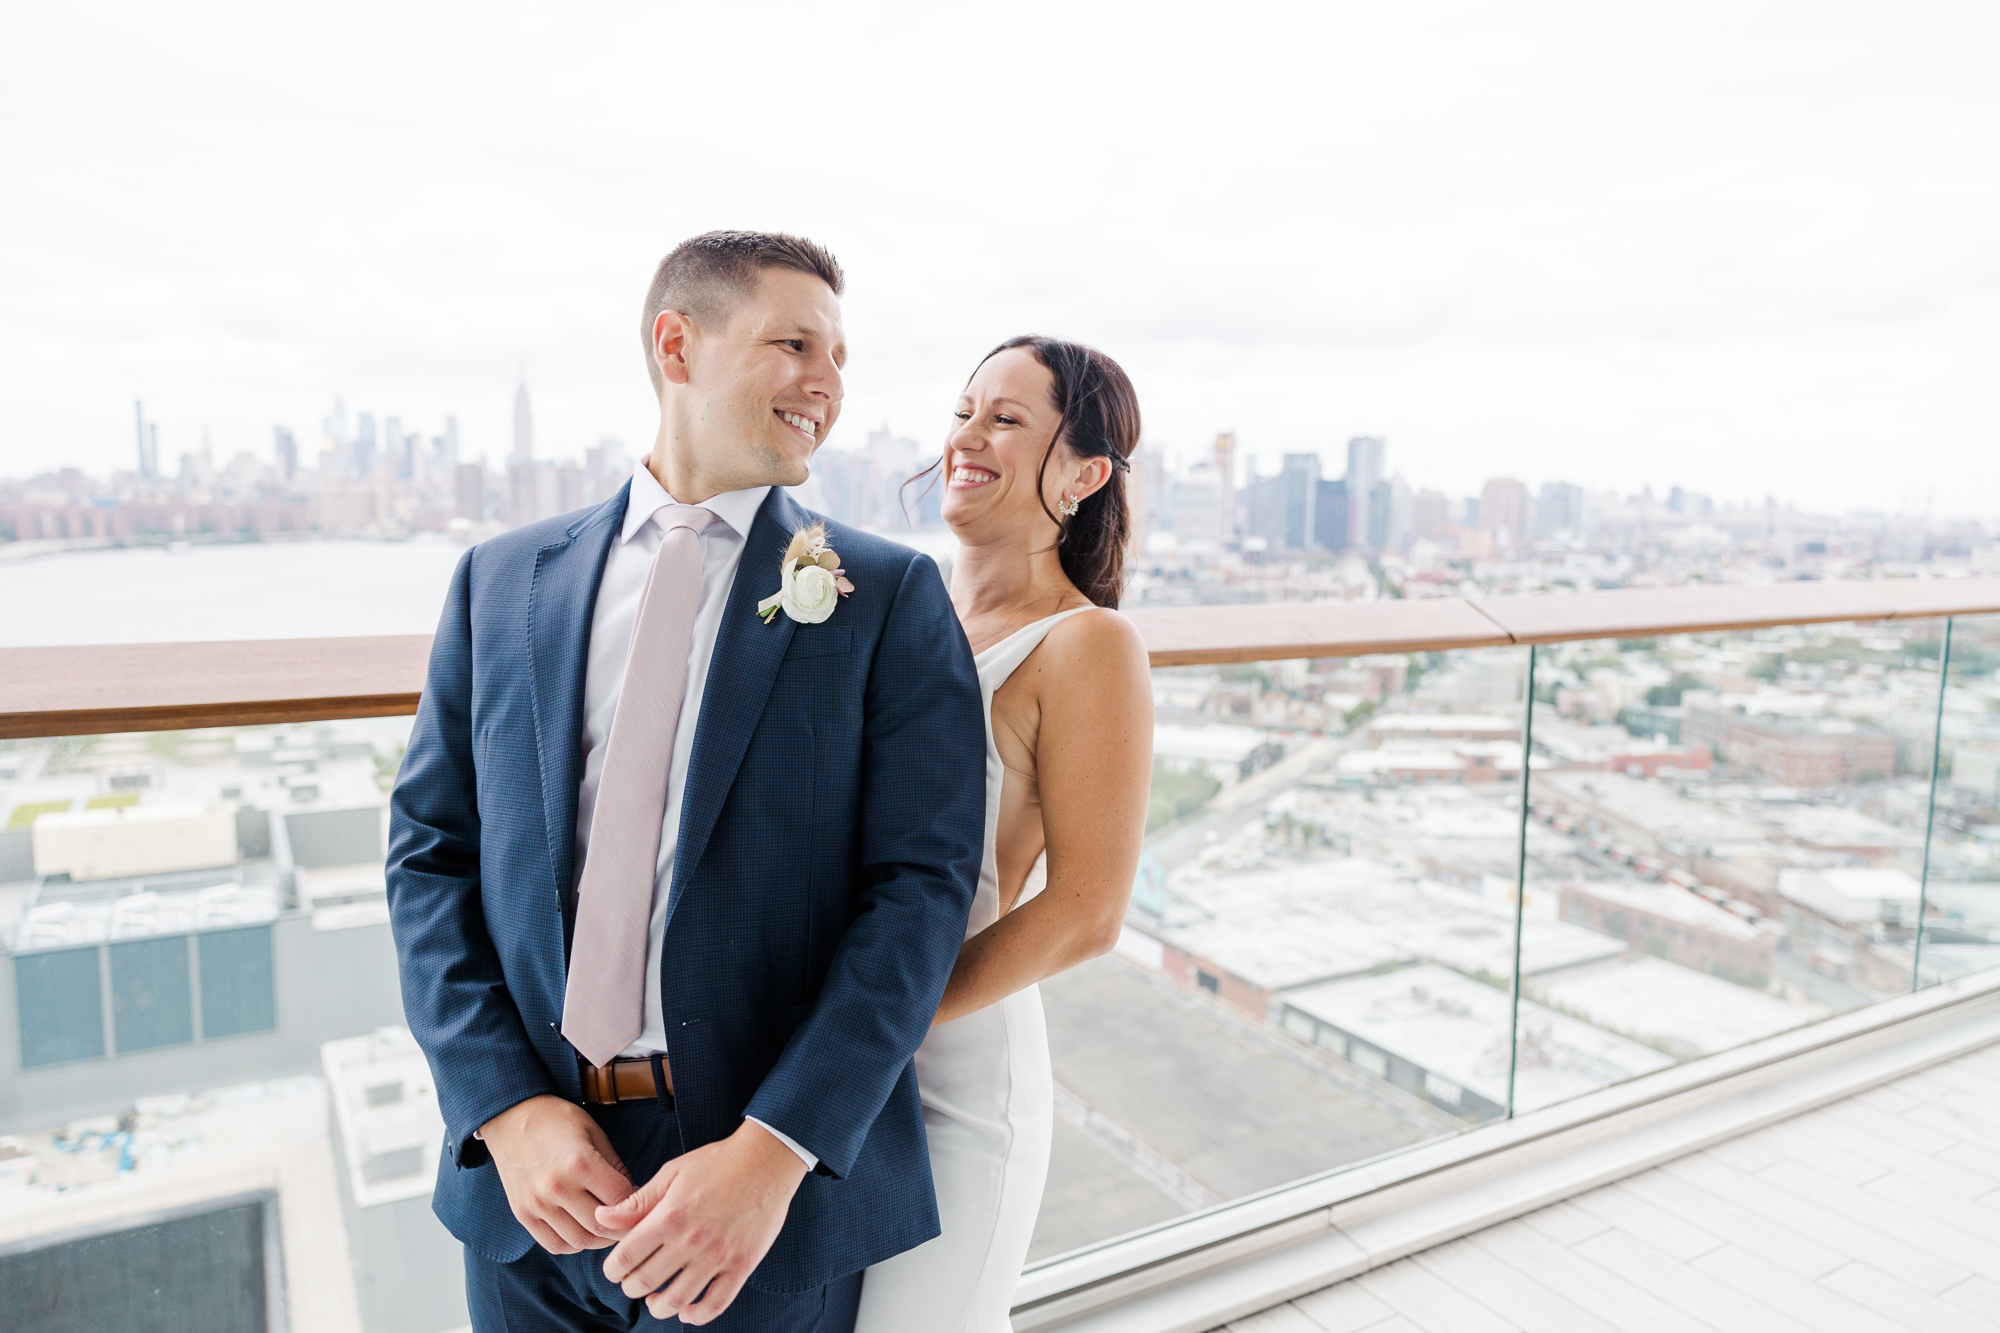 Pretty Hotels to Get Wedding-Ready in Brooklyn, New York